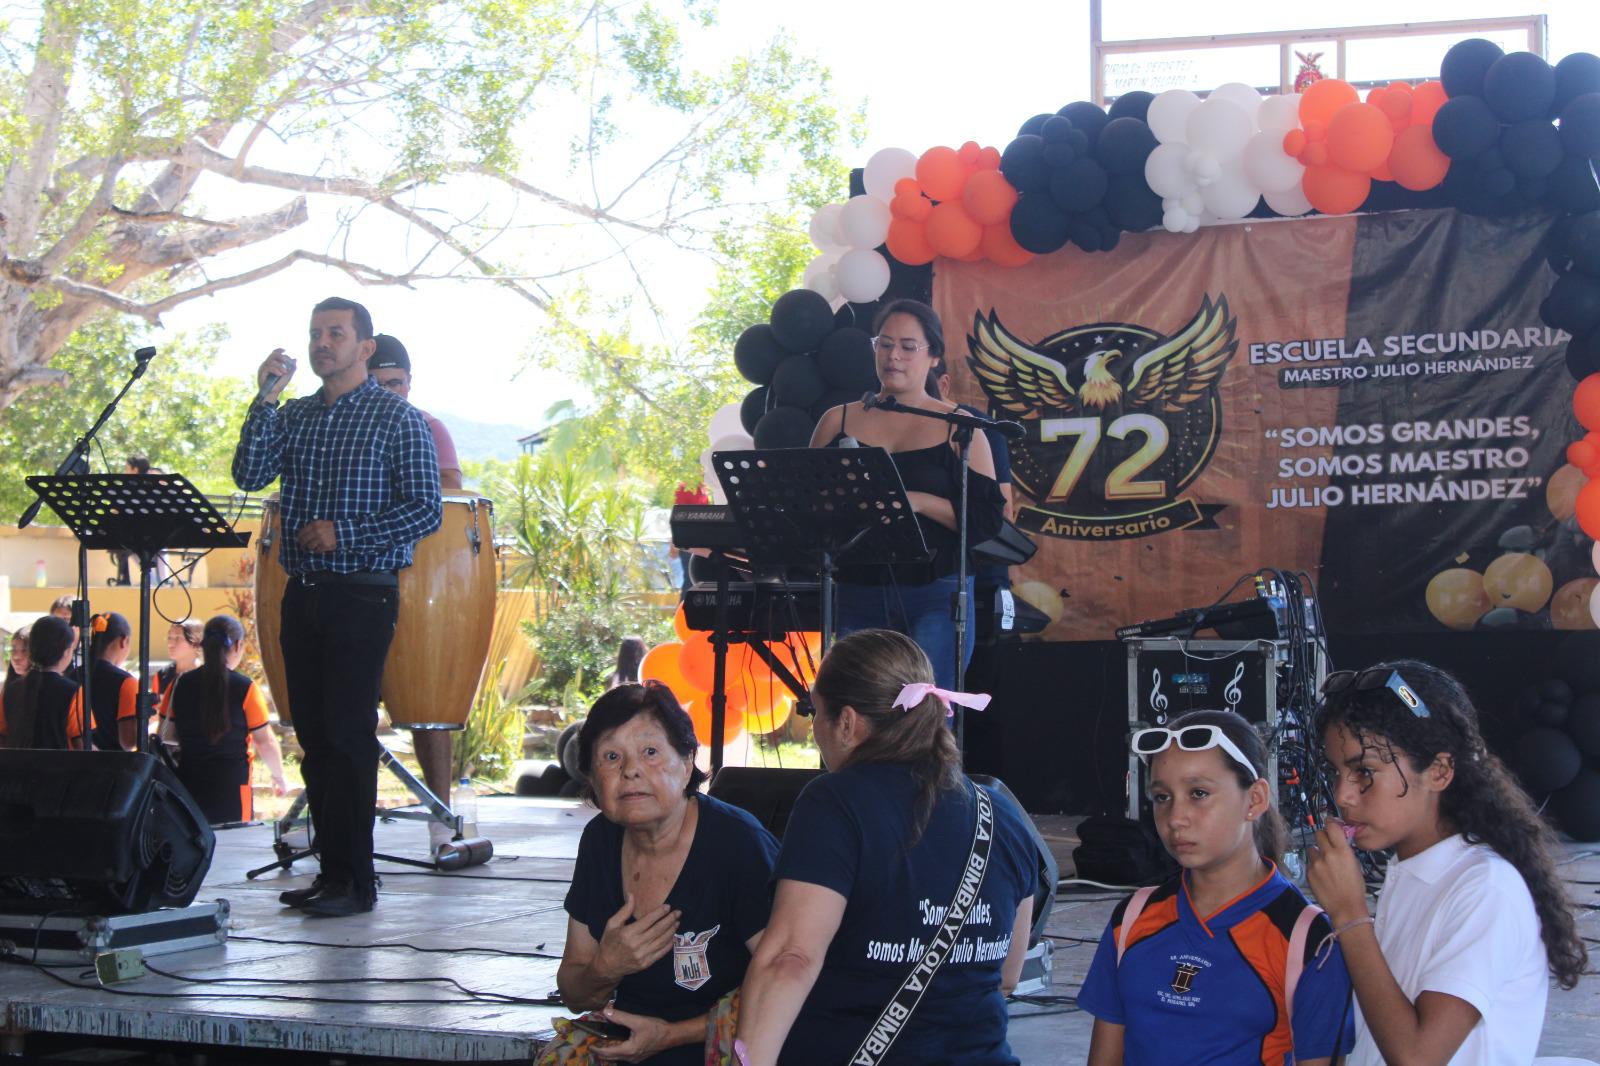 $!Celebran 72 Aniversario de fundación de la secundaria ‘Maestro Julio Hernández’ en Rosario